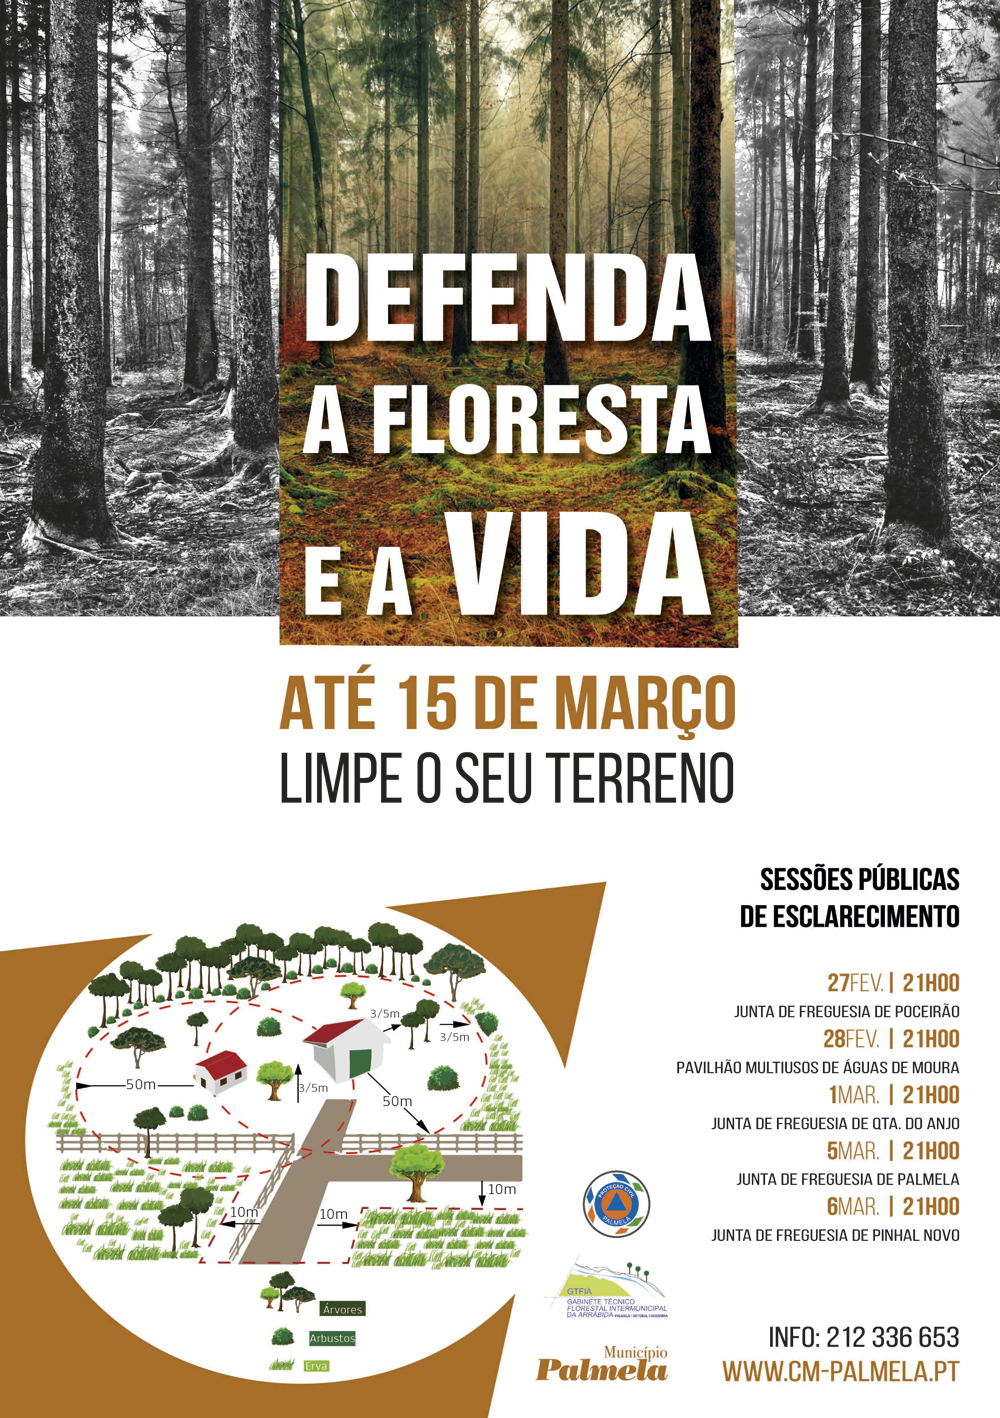 Defenda a Floresta e a Vida: Município promove sessões públicas de esclarecimento sobre limpeza d...